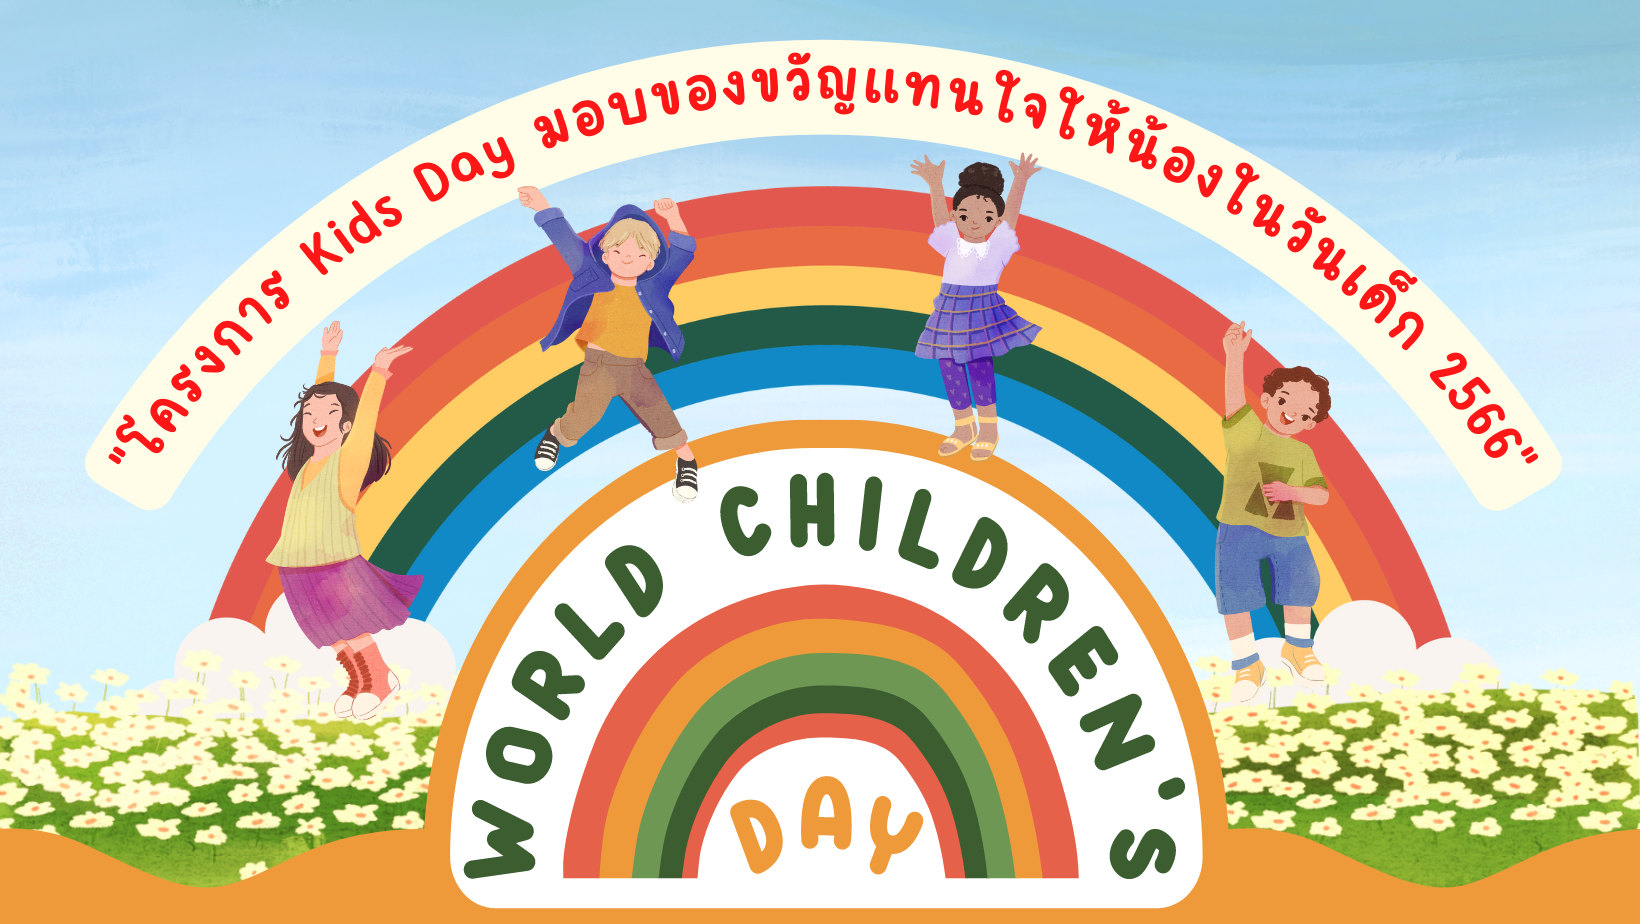 กิจกรรม CSR เพื่อสังคม "โครงการ Kids Day มอบของขวัญแทนใจให้น้องในวันเด็ก 2566"